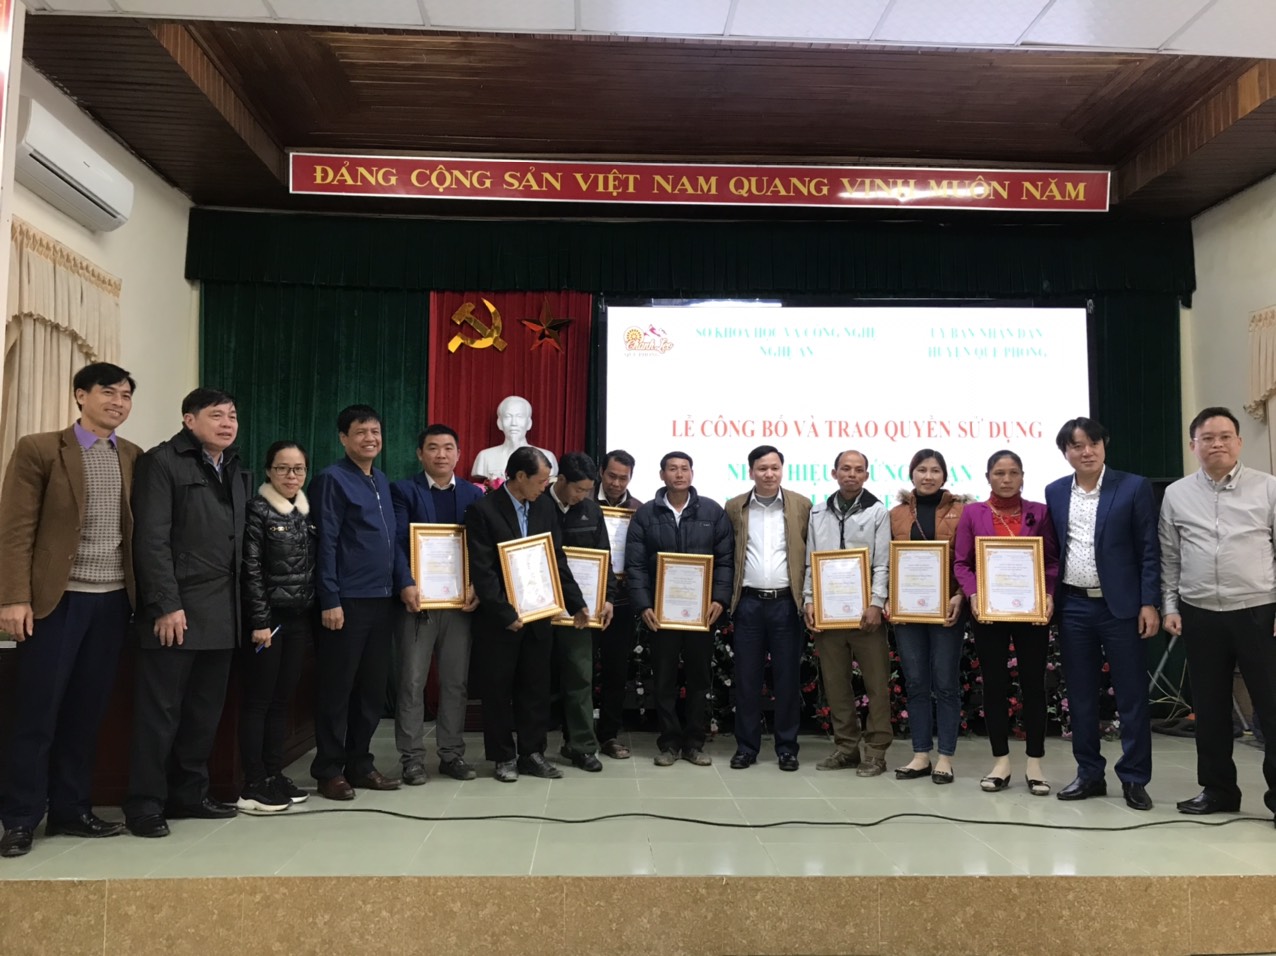 UBND huyện Quế Phong tổ chức lễ đón nhận văn bằng nhãn hiệu chứng nhận " Chanh leo Quế Phong"